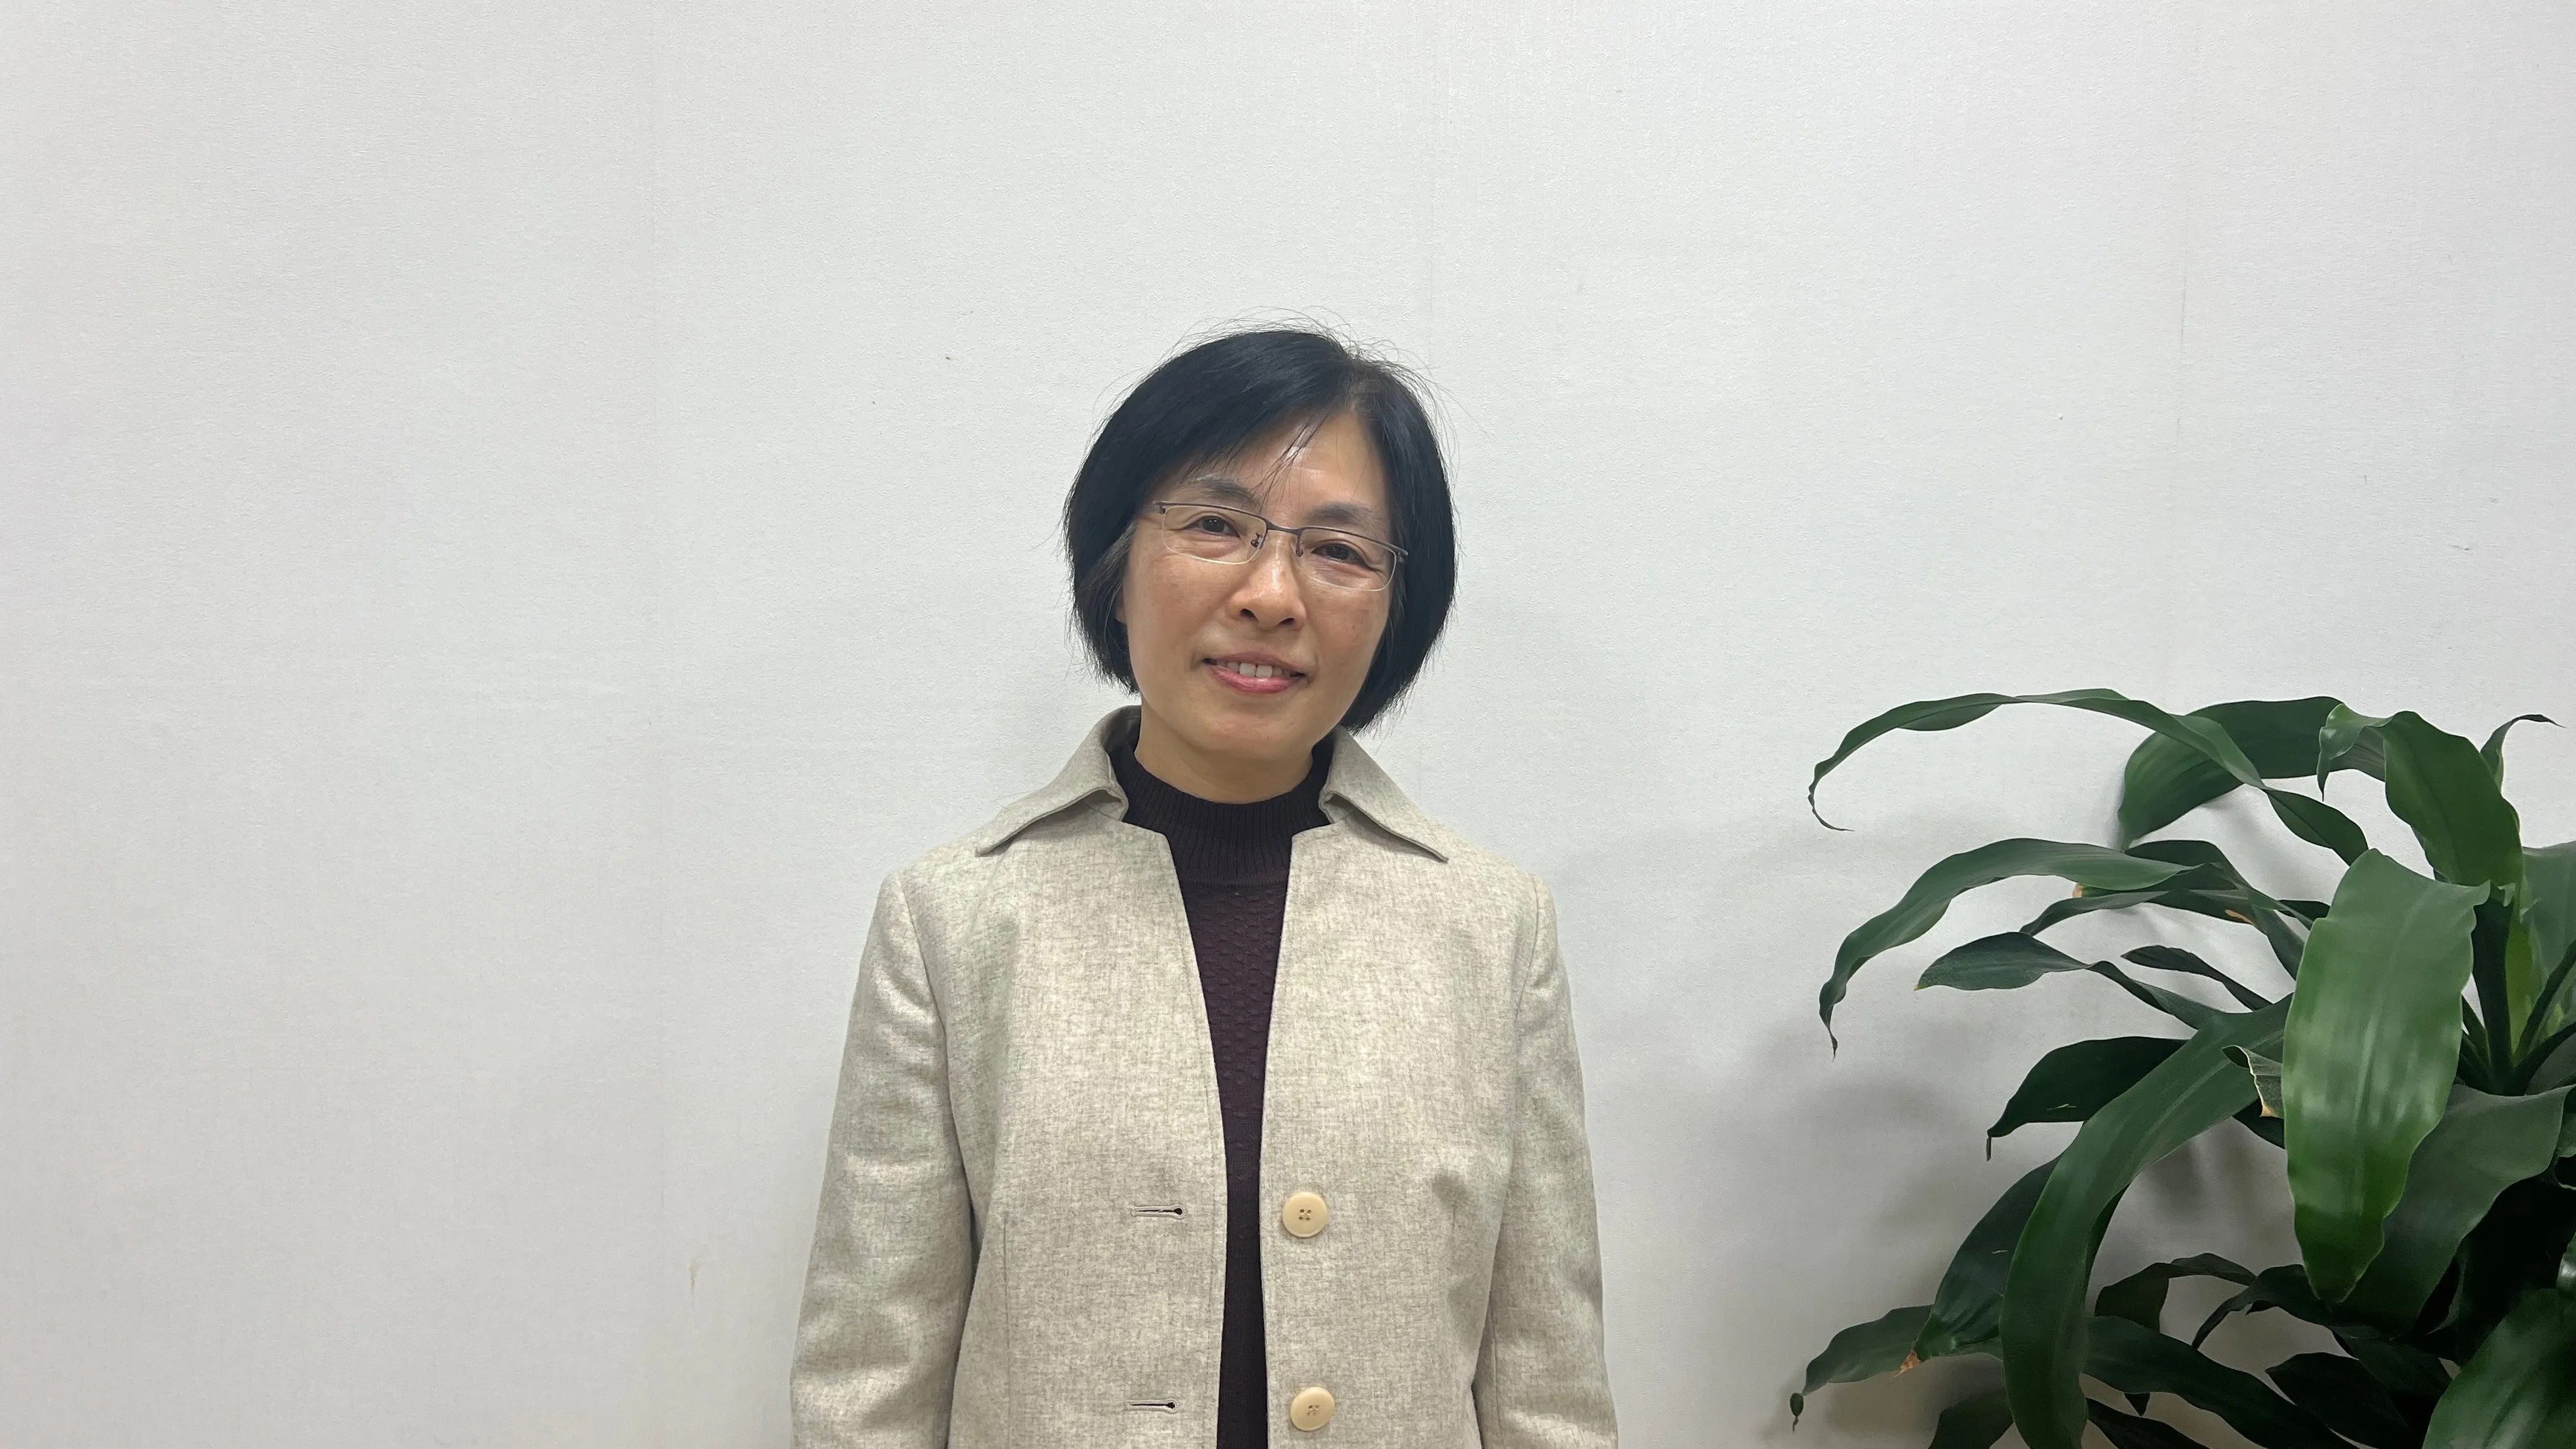 陳美燕是台灣金融監督管理委員會負責政治融資透明度的專員。